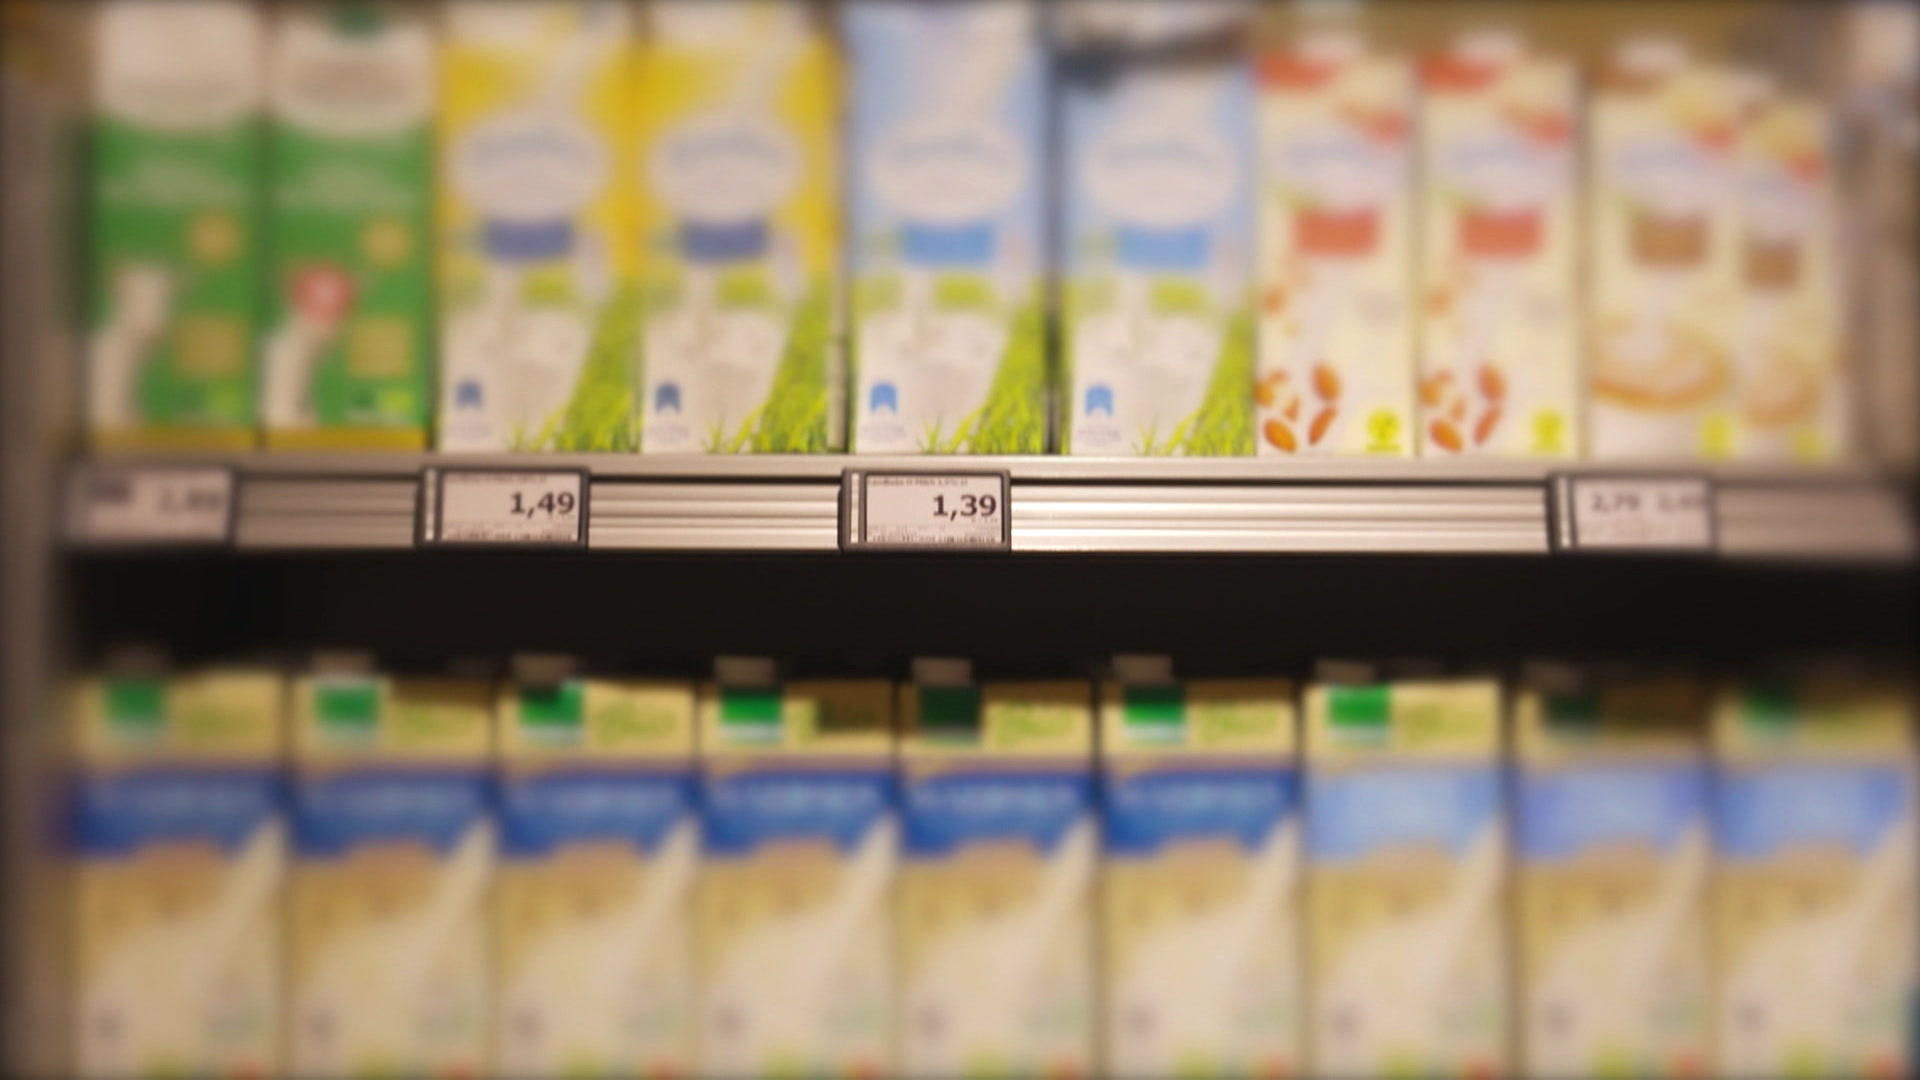 Aus dem gleichen Betrieb - aber 30 Prozent teurer Das miese Geschäft mit der Milch